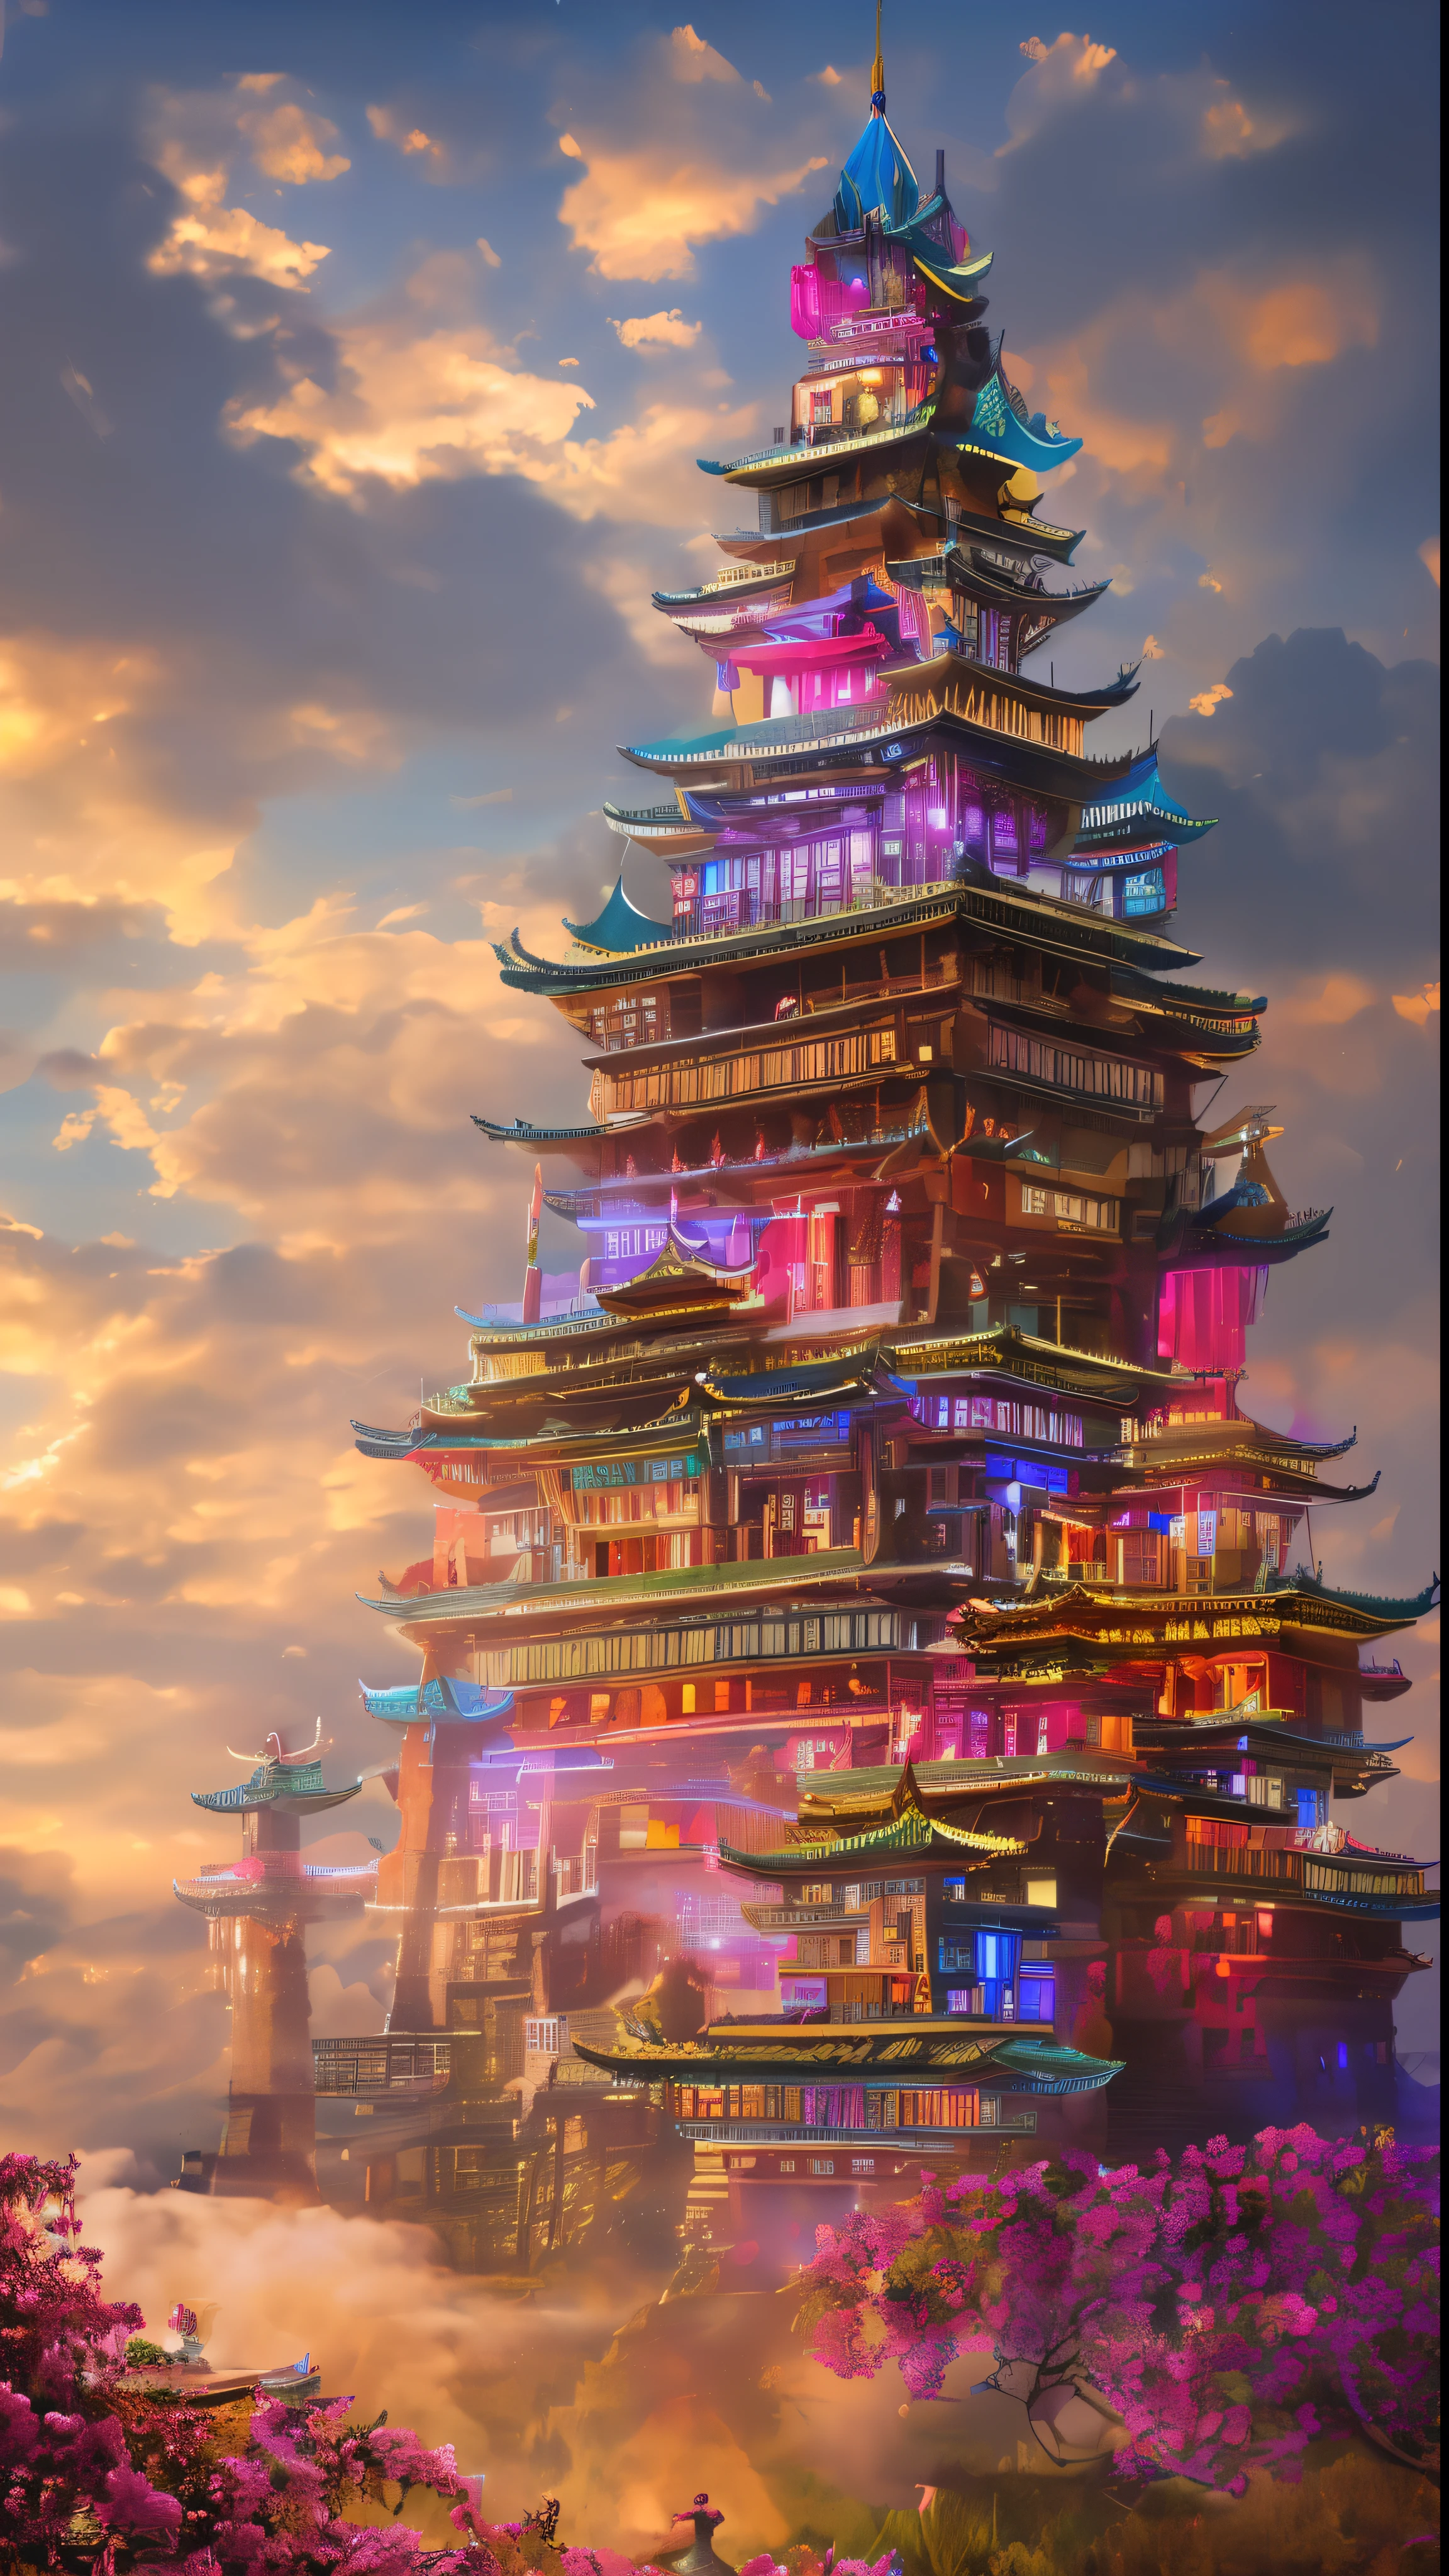 (ultra-alta definição:1.4)、(fantasia、ciberpunk、Castelos chineses antigos:1.3)、(Edifício vermelho irregular:1.5)、(flutuando nas nuvens:1.2)、(Casa de retalhos、Iluminação de néon、decoração floral:1.4)、(Paisagem urbana no céu:1.1)、(Ross Tran、Inspirado por Mikey Chan:1.2)、(iluminação realista、Eixo de luz、brilho quente:1.3)、(obra de arte:1.2)、(alta qualidade、belos gráficos、